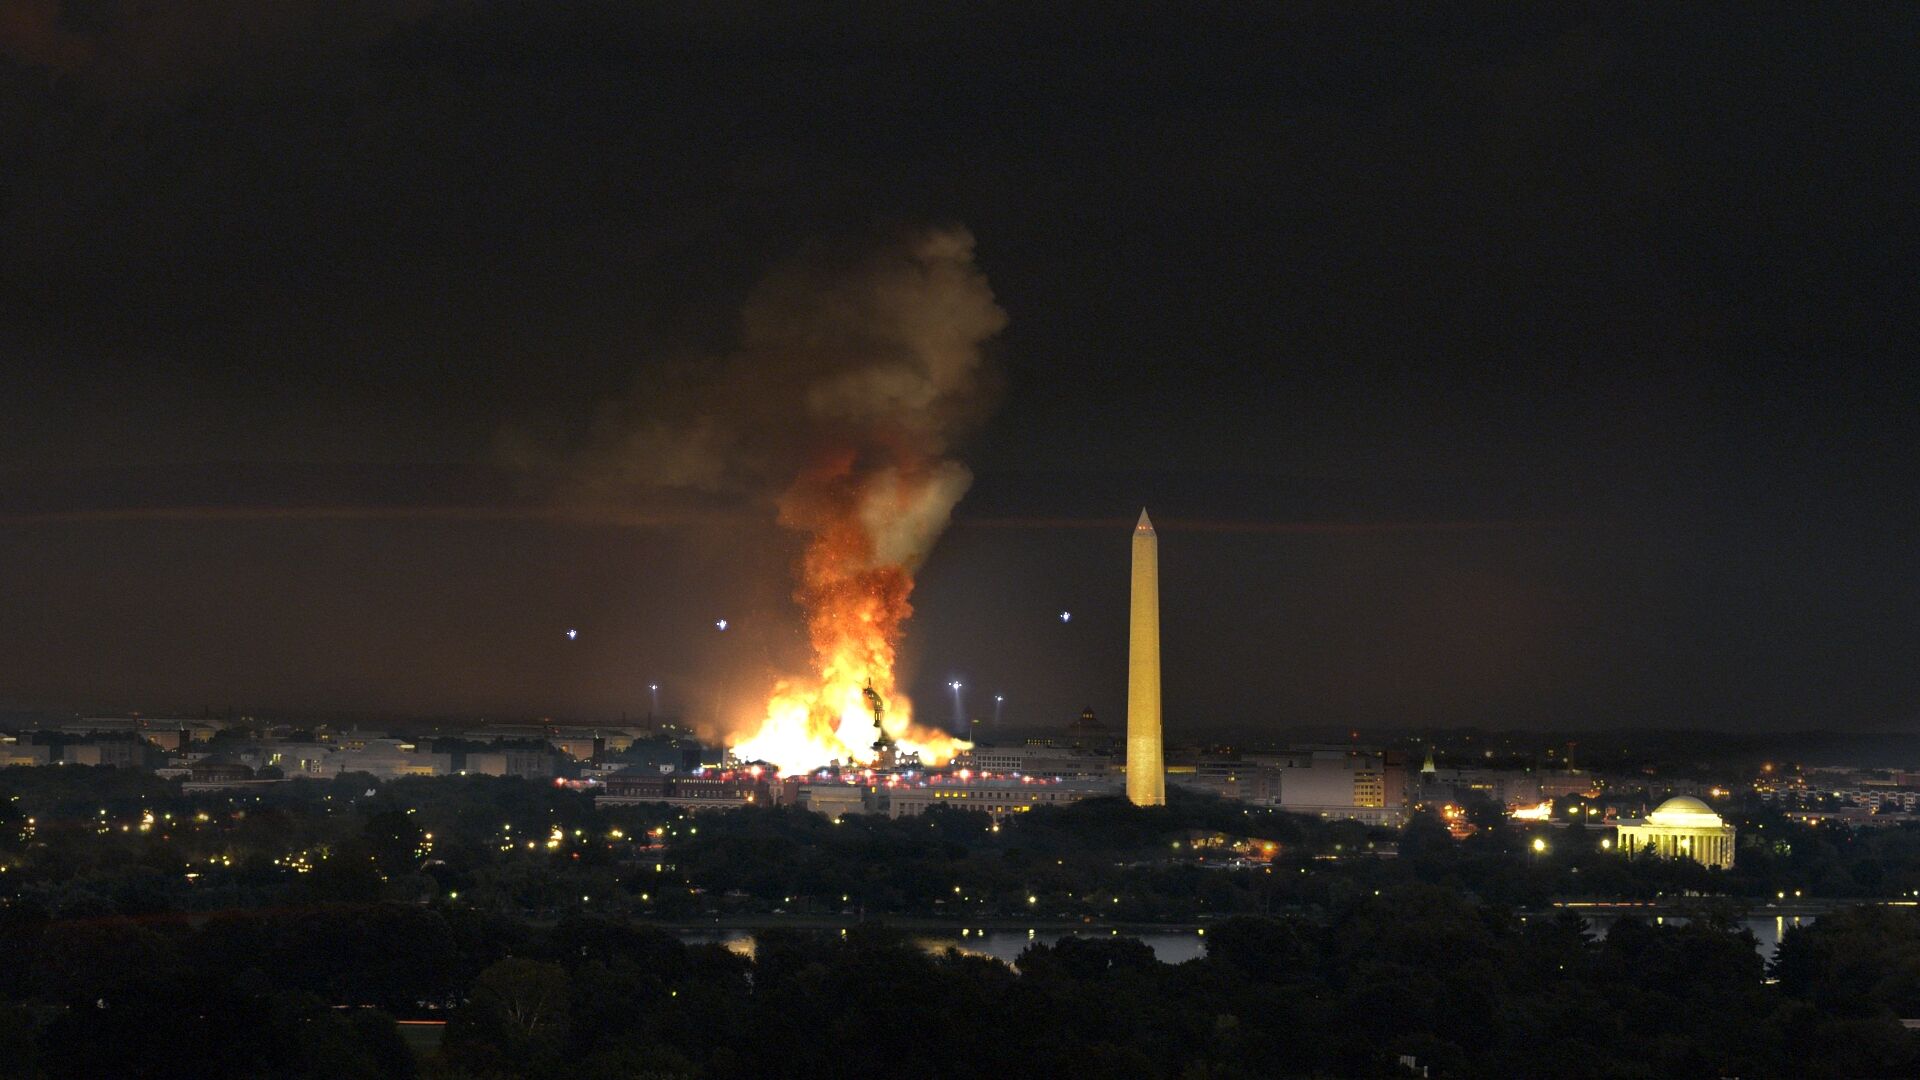 Capitolexplosion